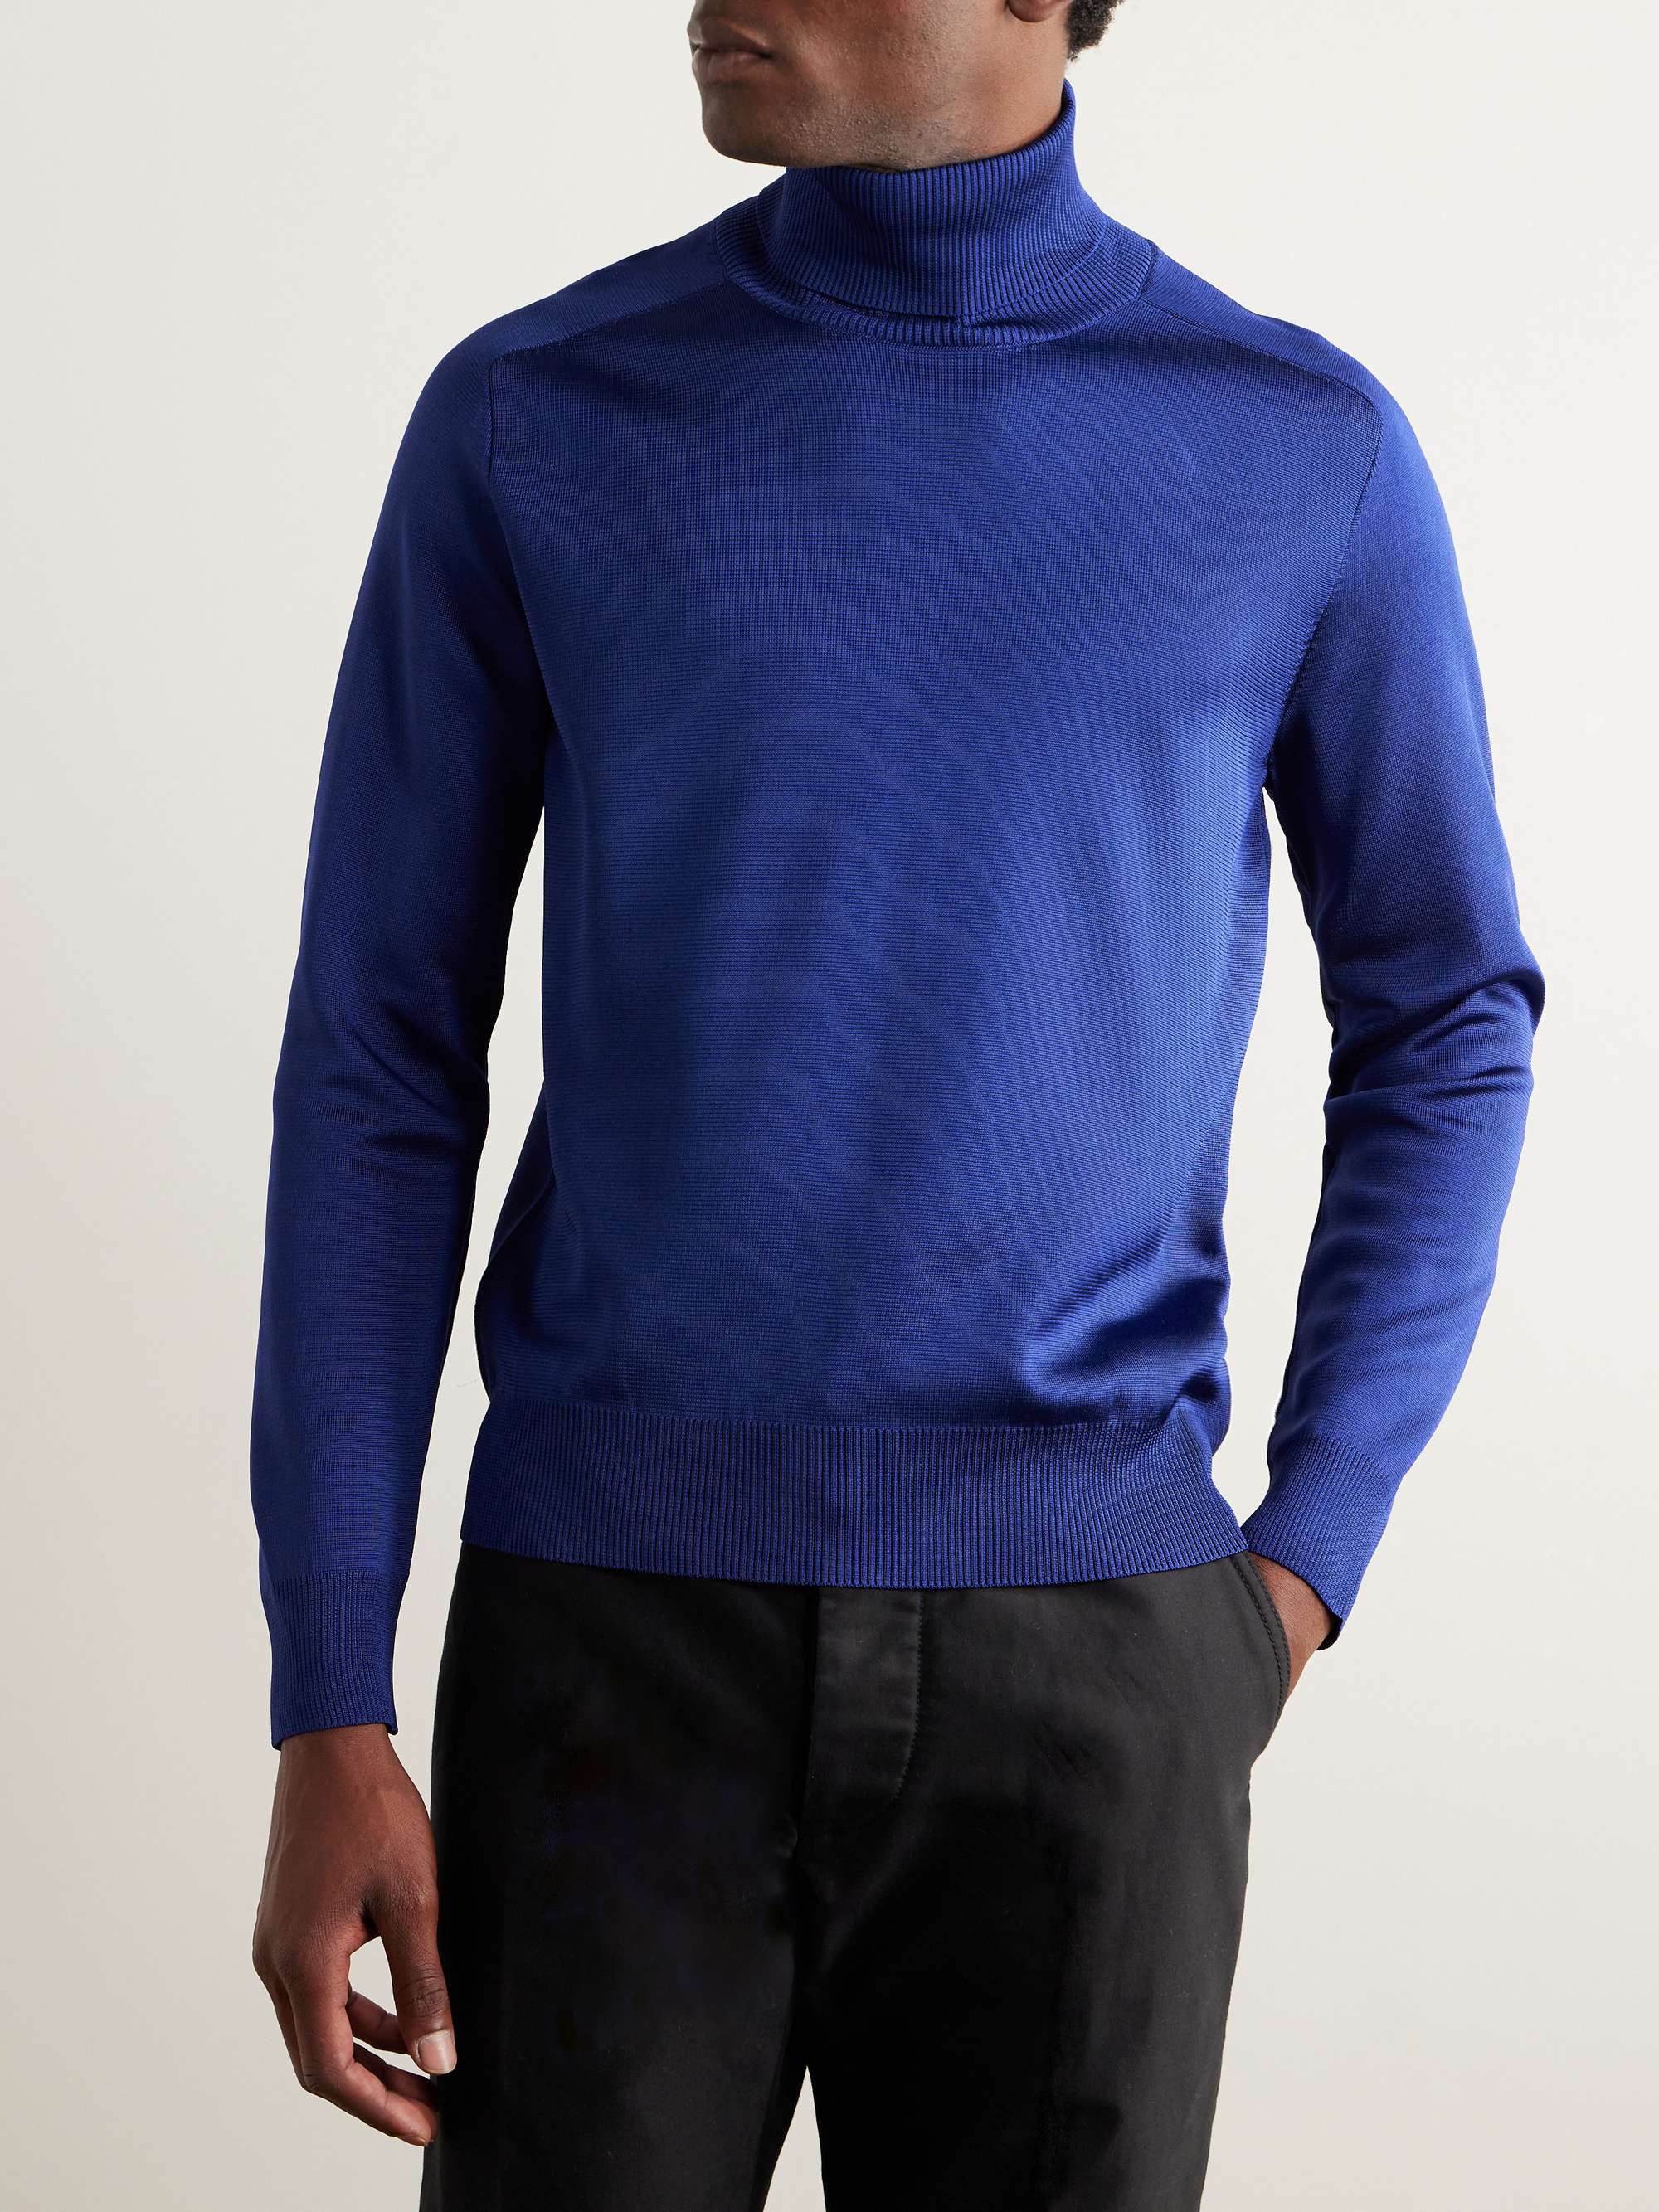 TOM FORD Slim-Fit Silk-Blend Rollneck Sweater for Men | MR PORTER